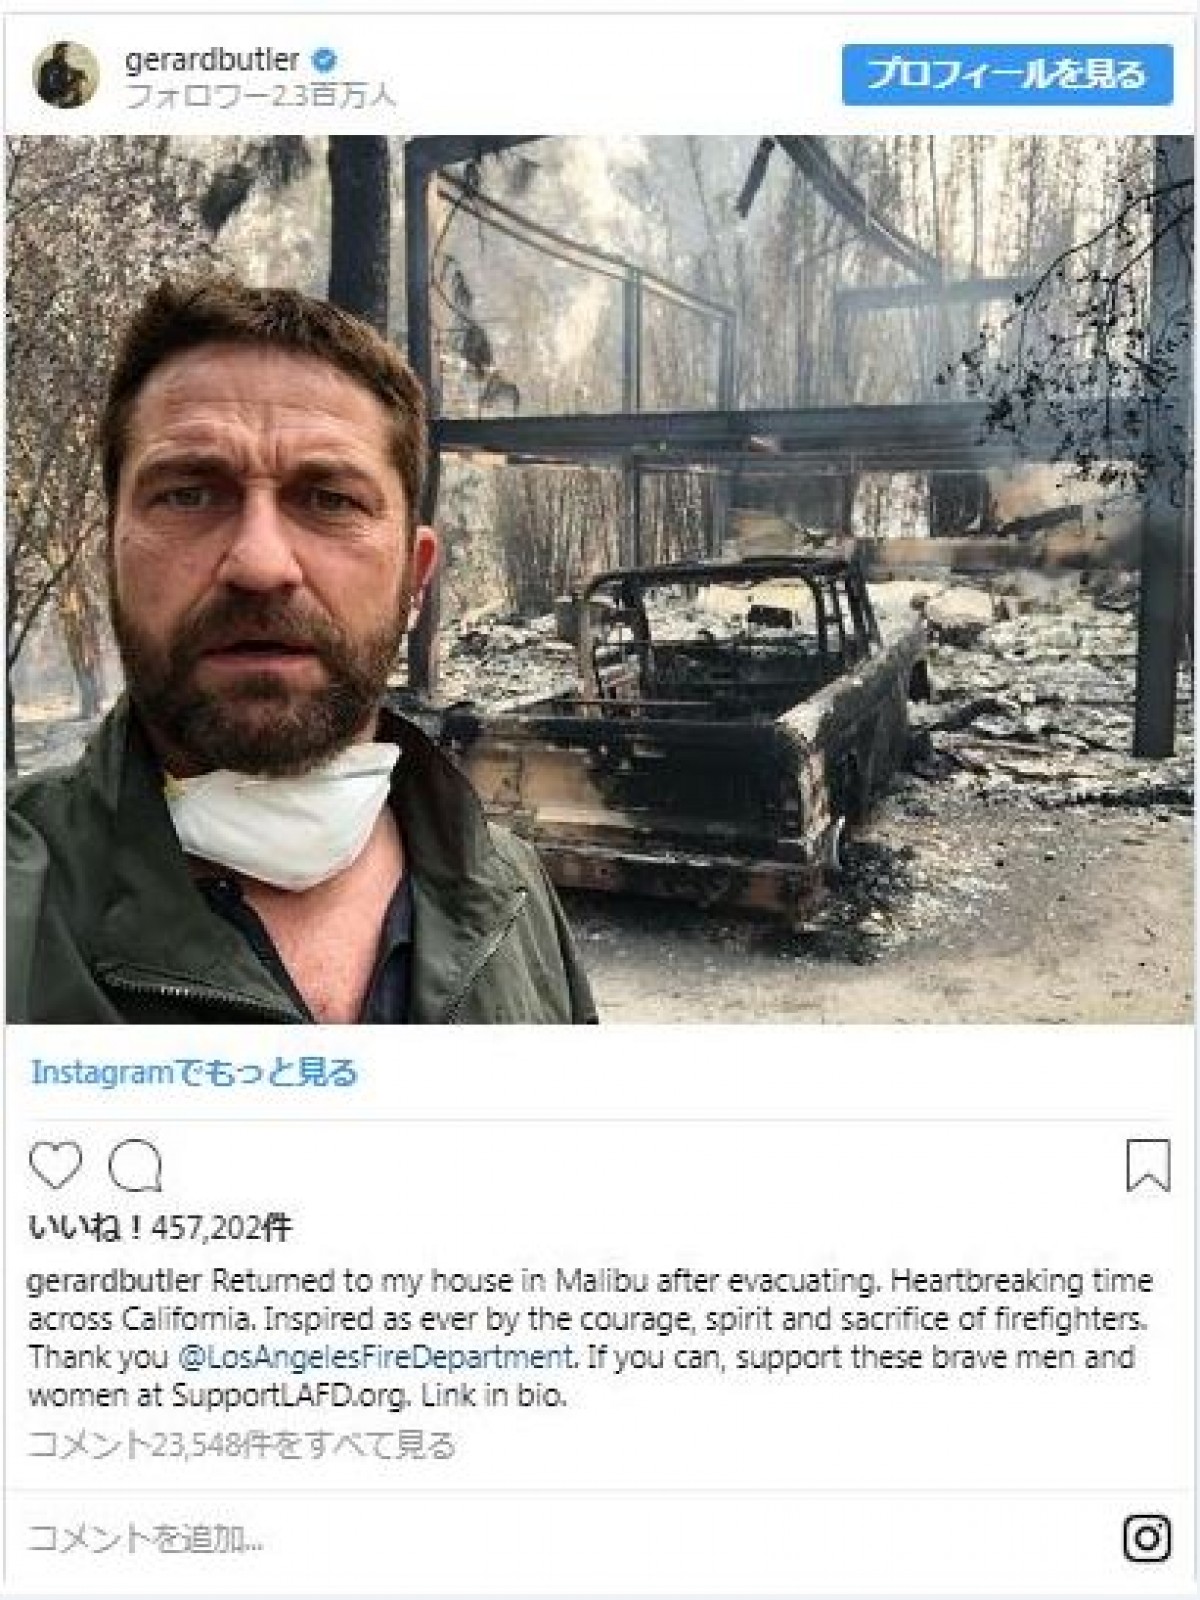 マイリー・サイラス、山火事で家が全焼「動物と生涯最愛の人は無事」で感謝